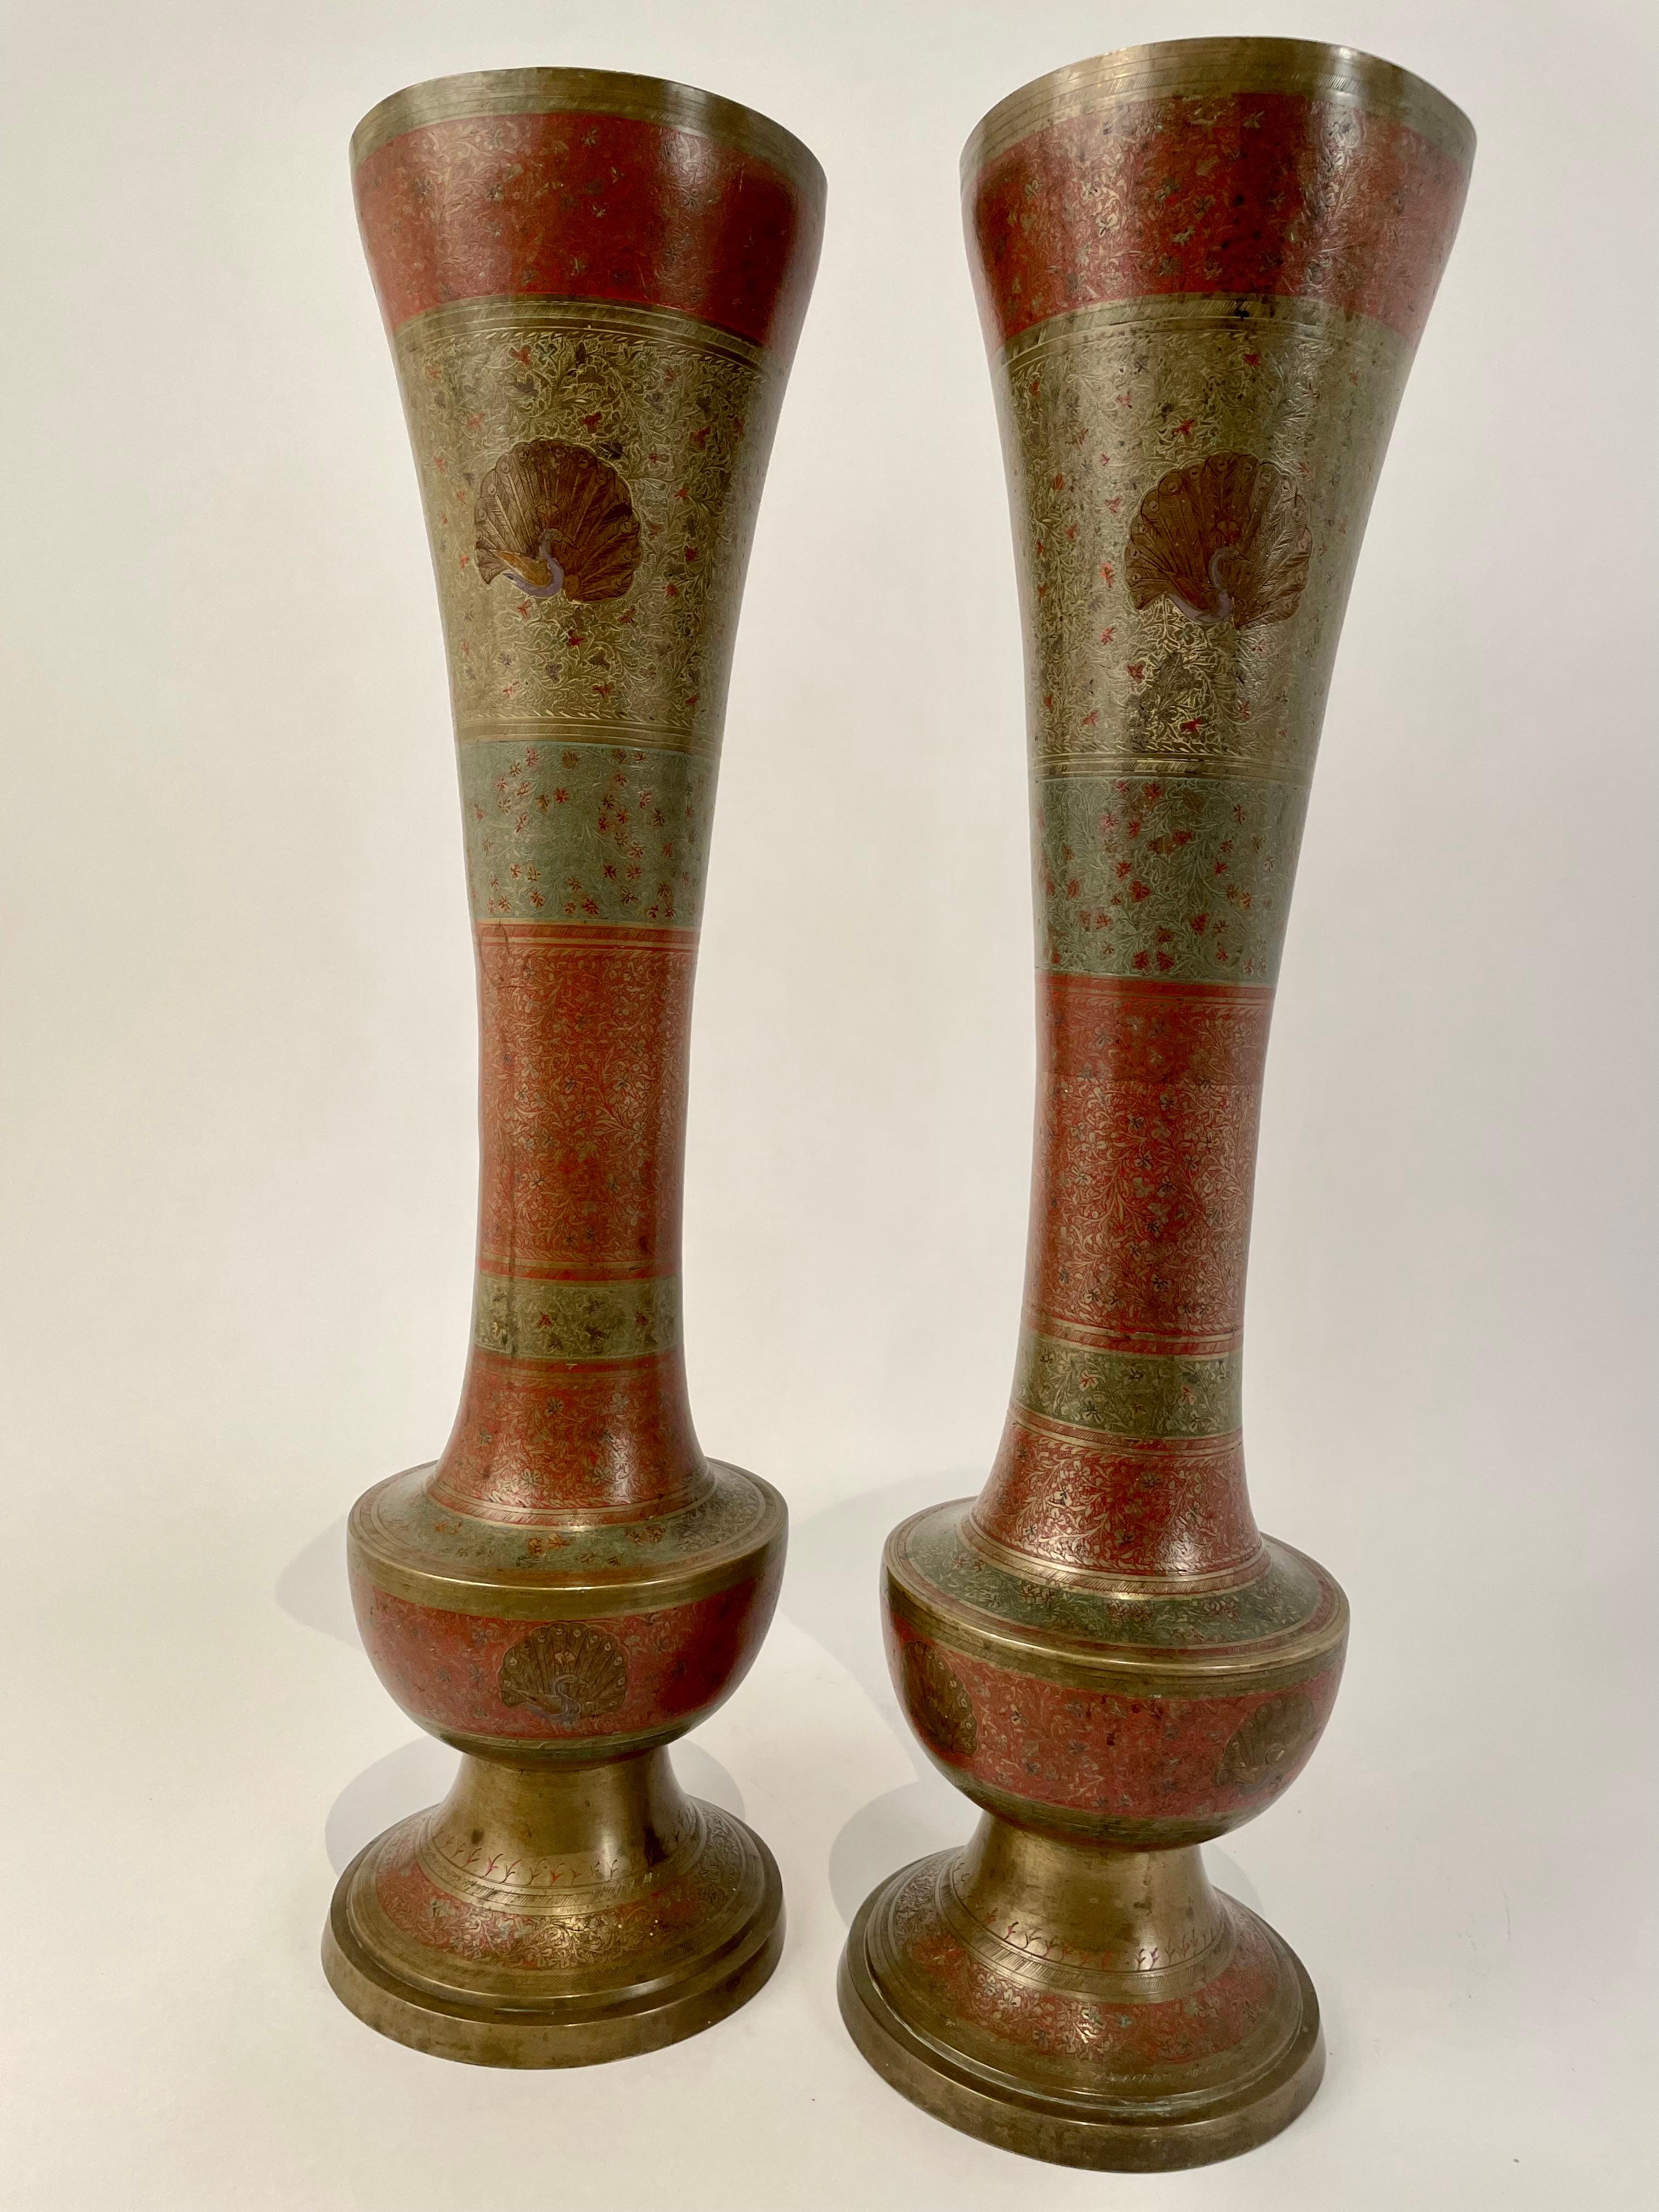 Impressionnants et très cool vases en laiton de grande taille en forme de flûte avec des motifs gravés complexes couvrant la surface et des décorations de paon. Coloré en rouge et vert d'une manière similaire au cloisonné, avec une belle patine